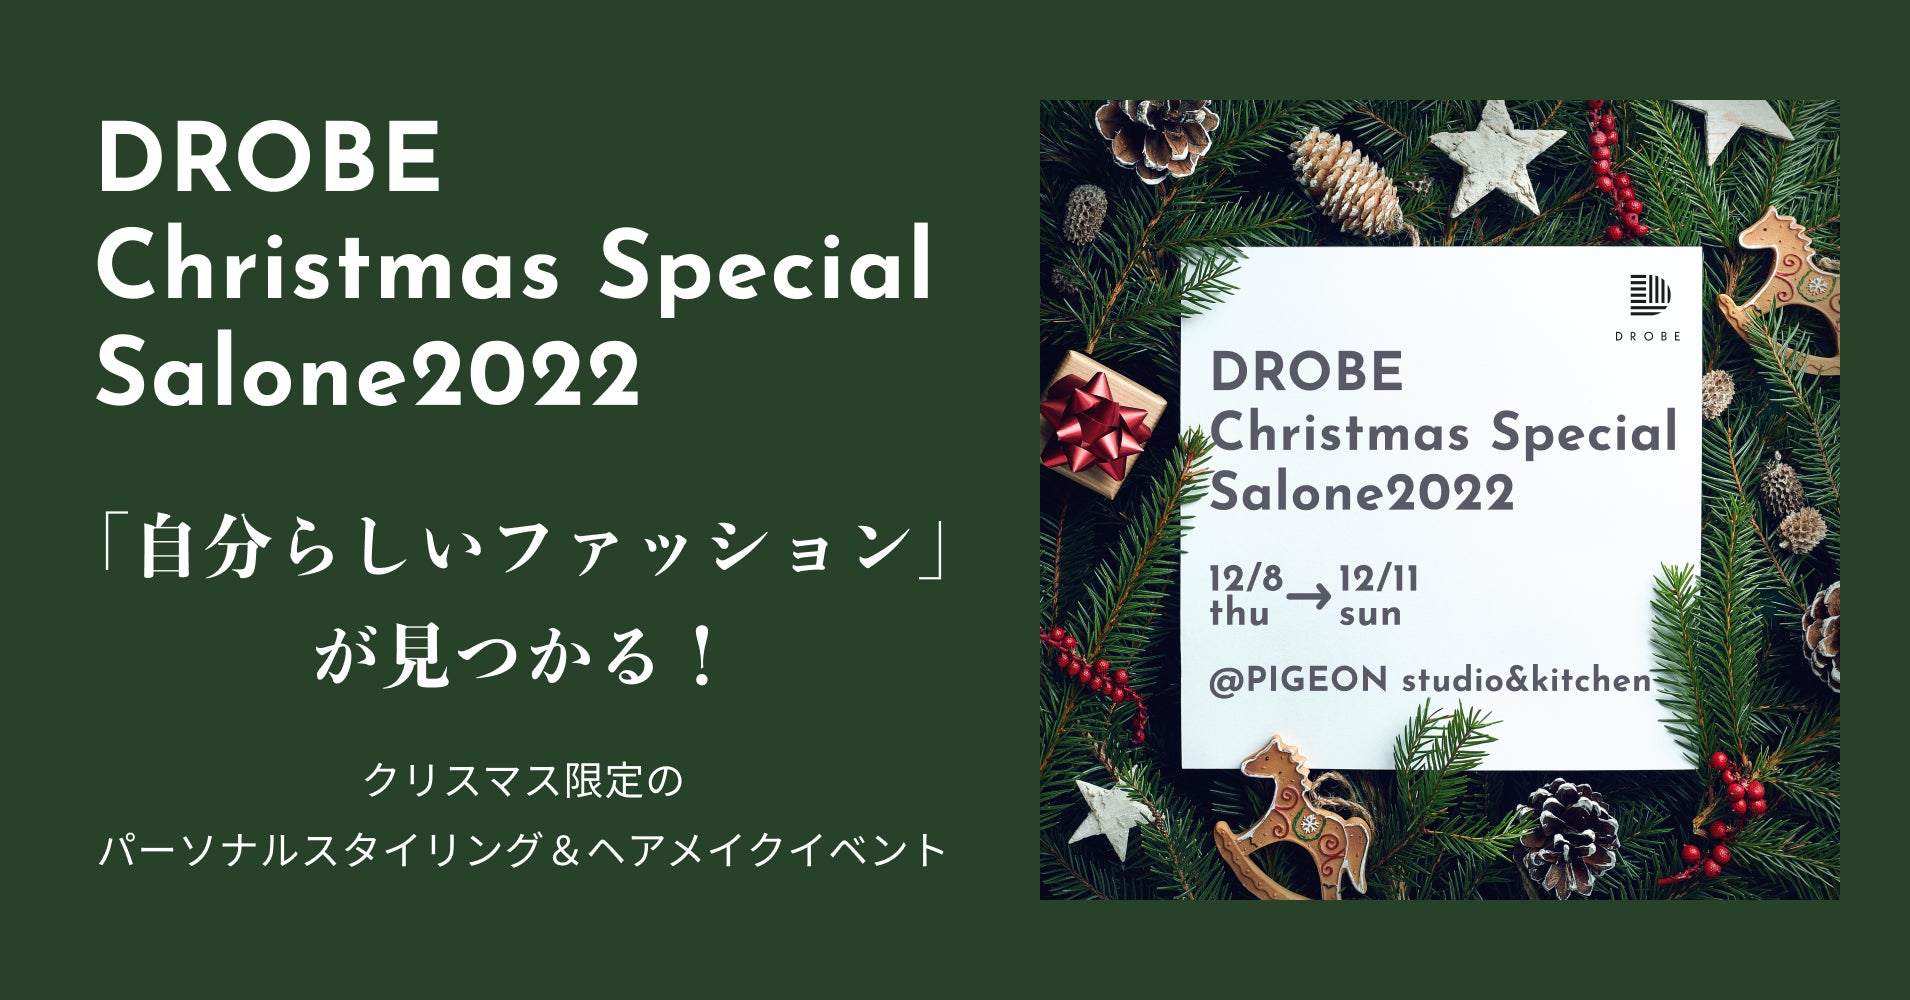 パーソナルスタイリングサービスのDROBEが単独では初のパーソナルスタイリング体験イベントを開催 「DROBE Chrismas Special Salone 2022」